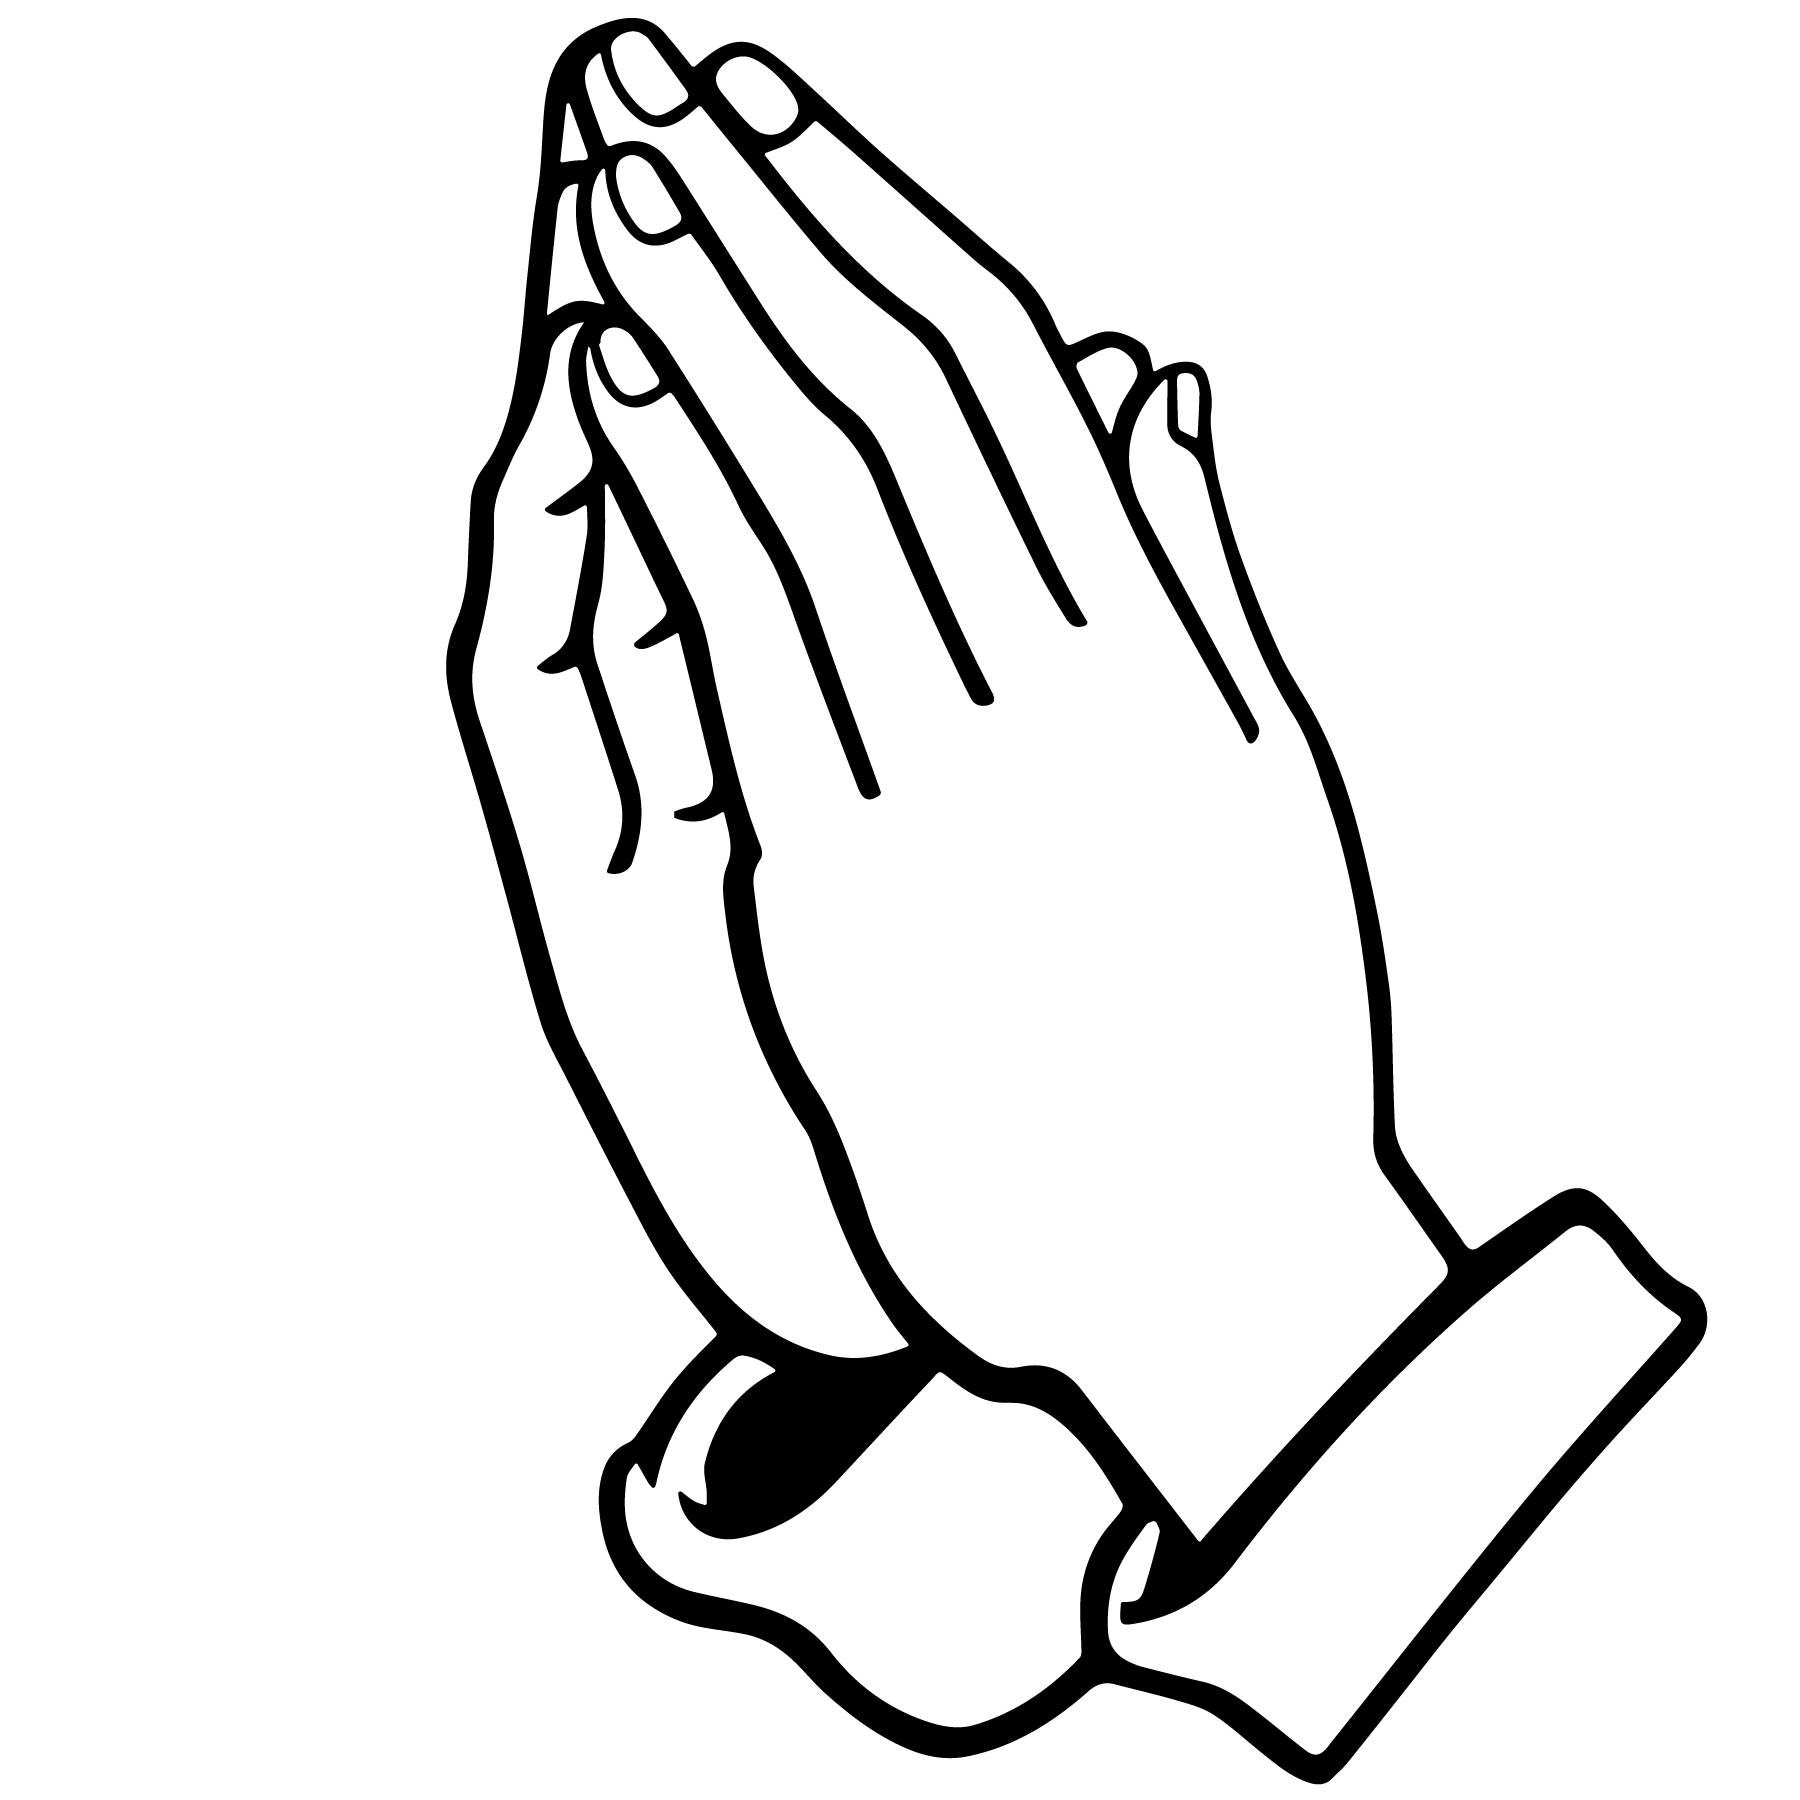 praying hands vector Download Free Vectors, Clipart Graphics & Vector Art